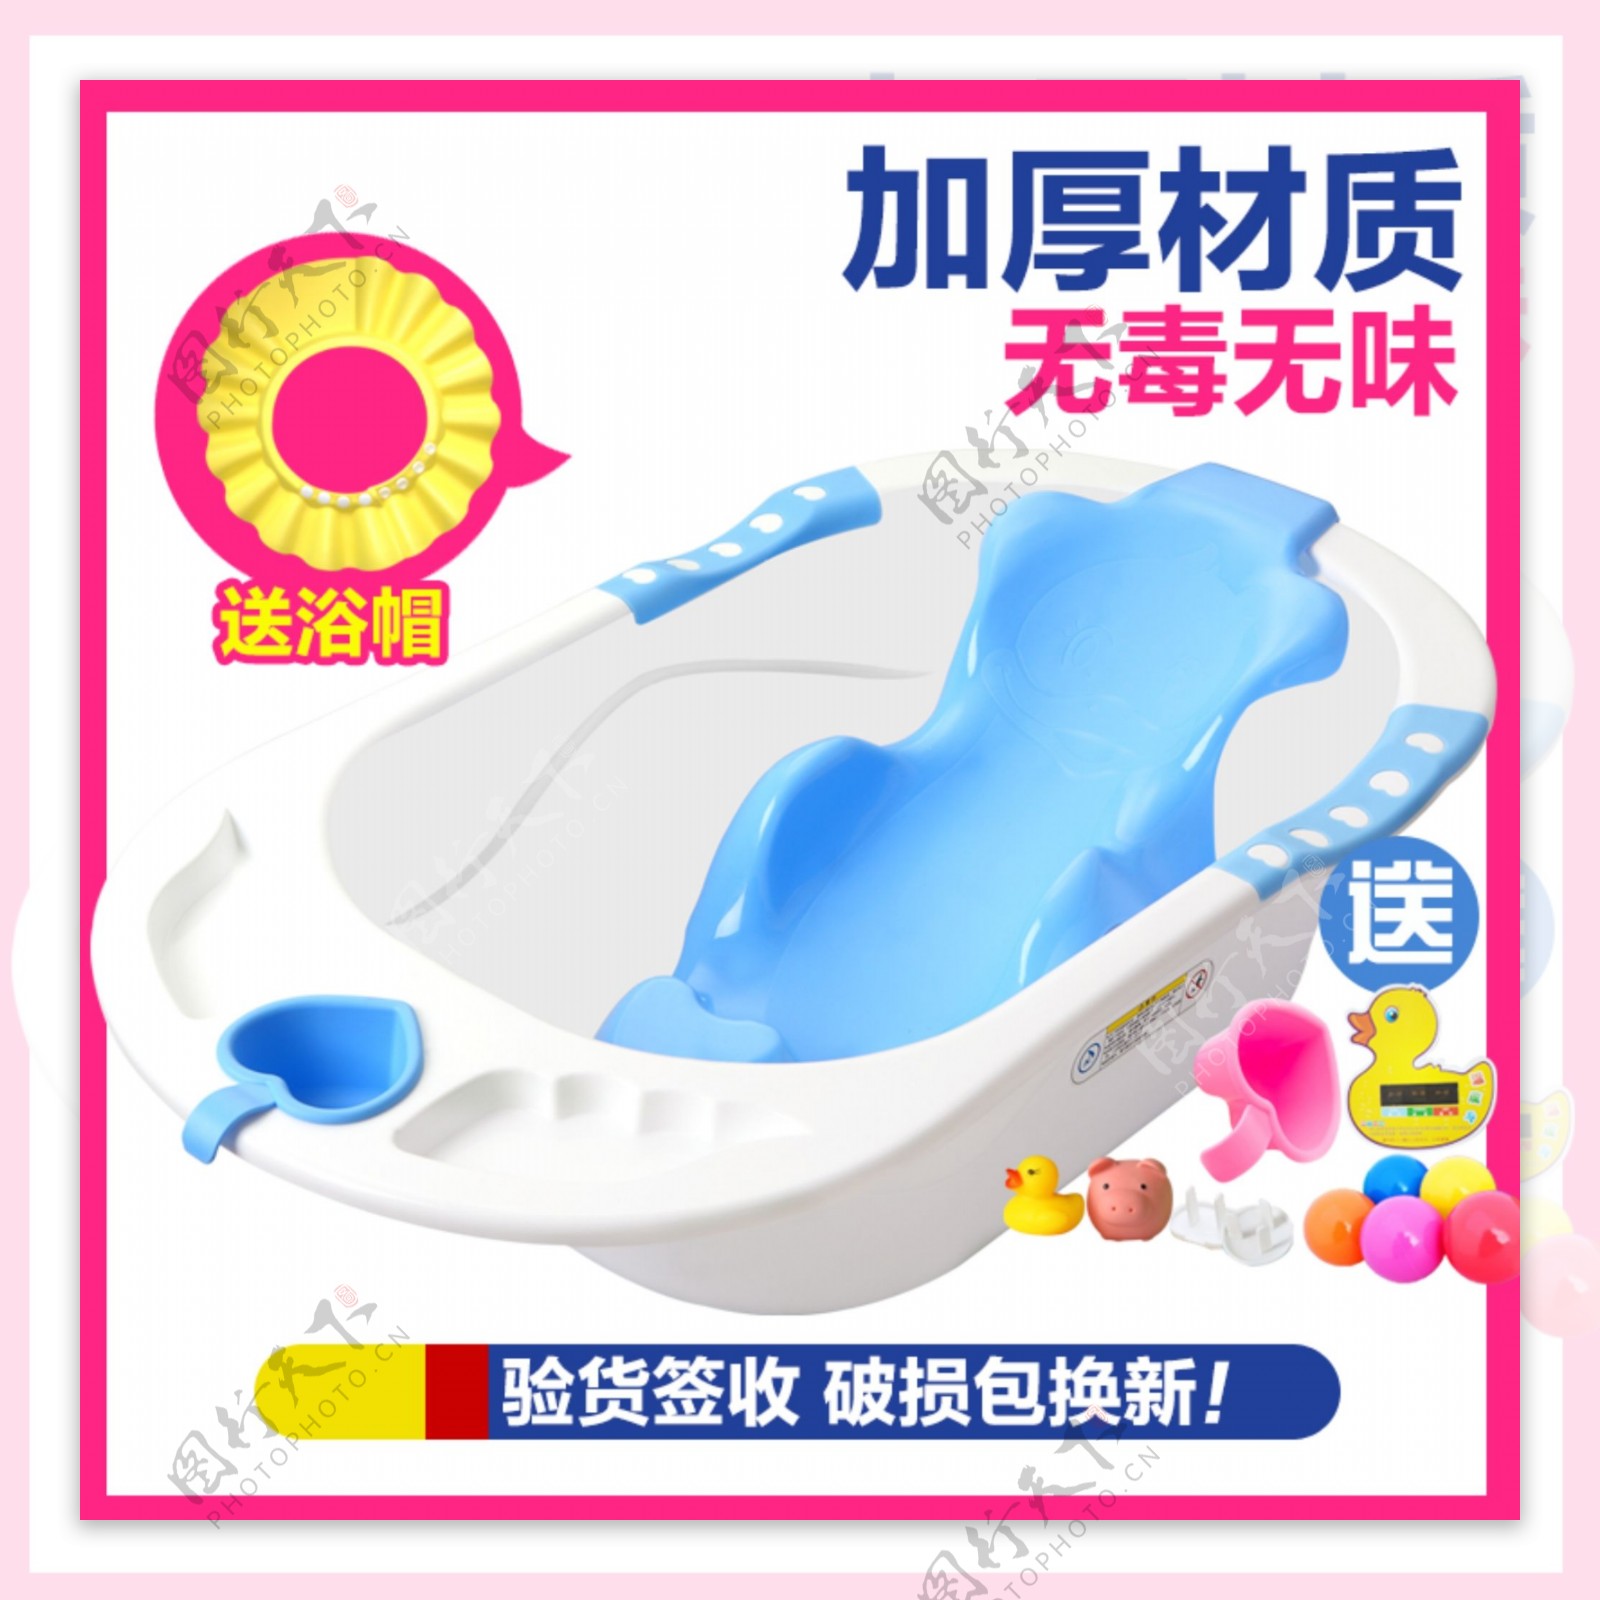 婴儿塑料浴盆